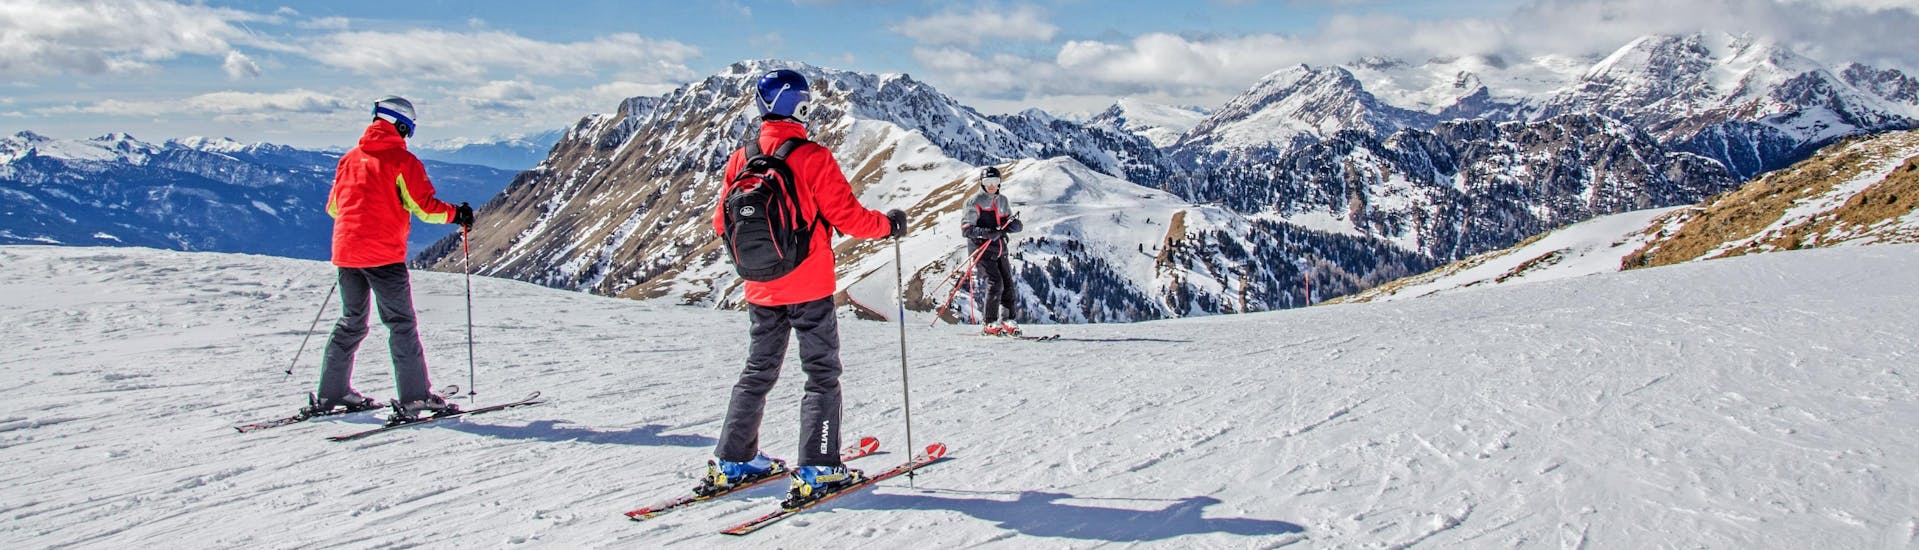 Skiërs op de top van de bergen met uitzicht op het skigebied.